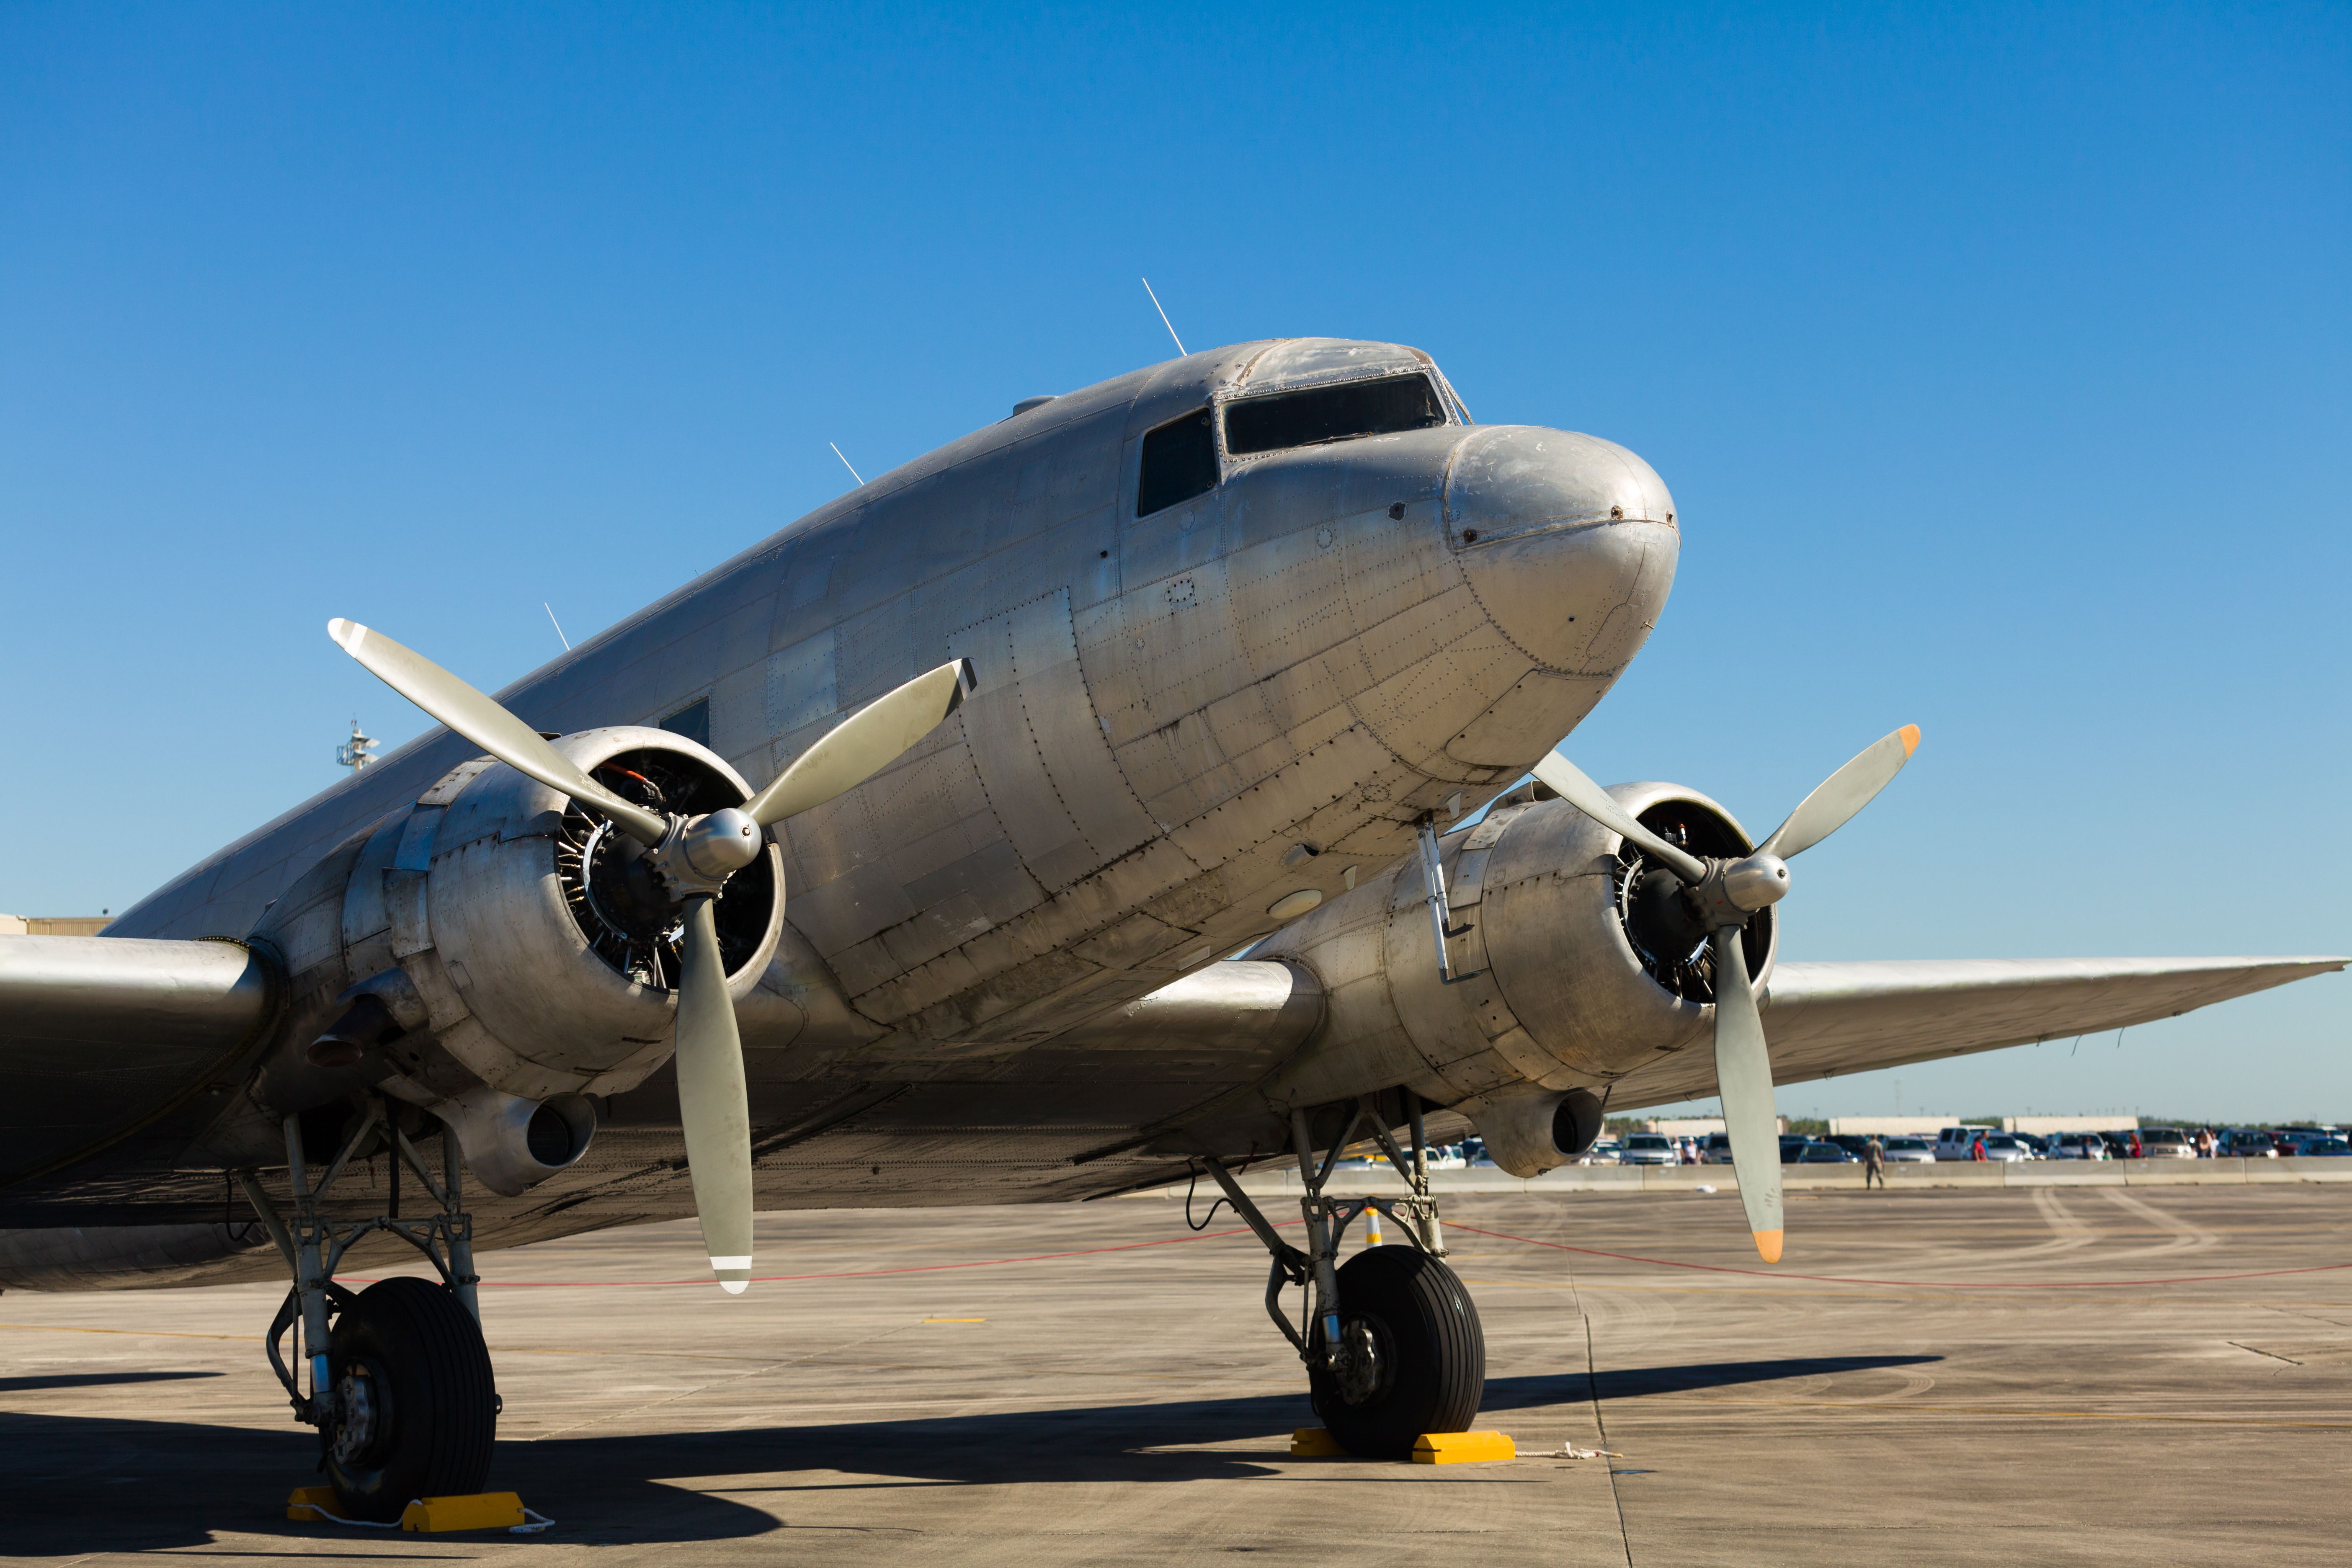 DOuglas DC-3